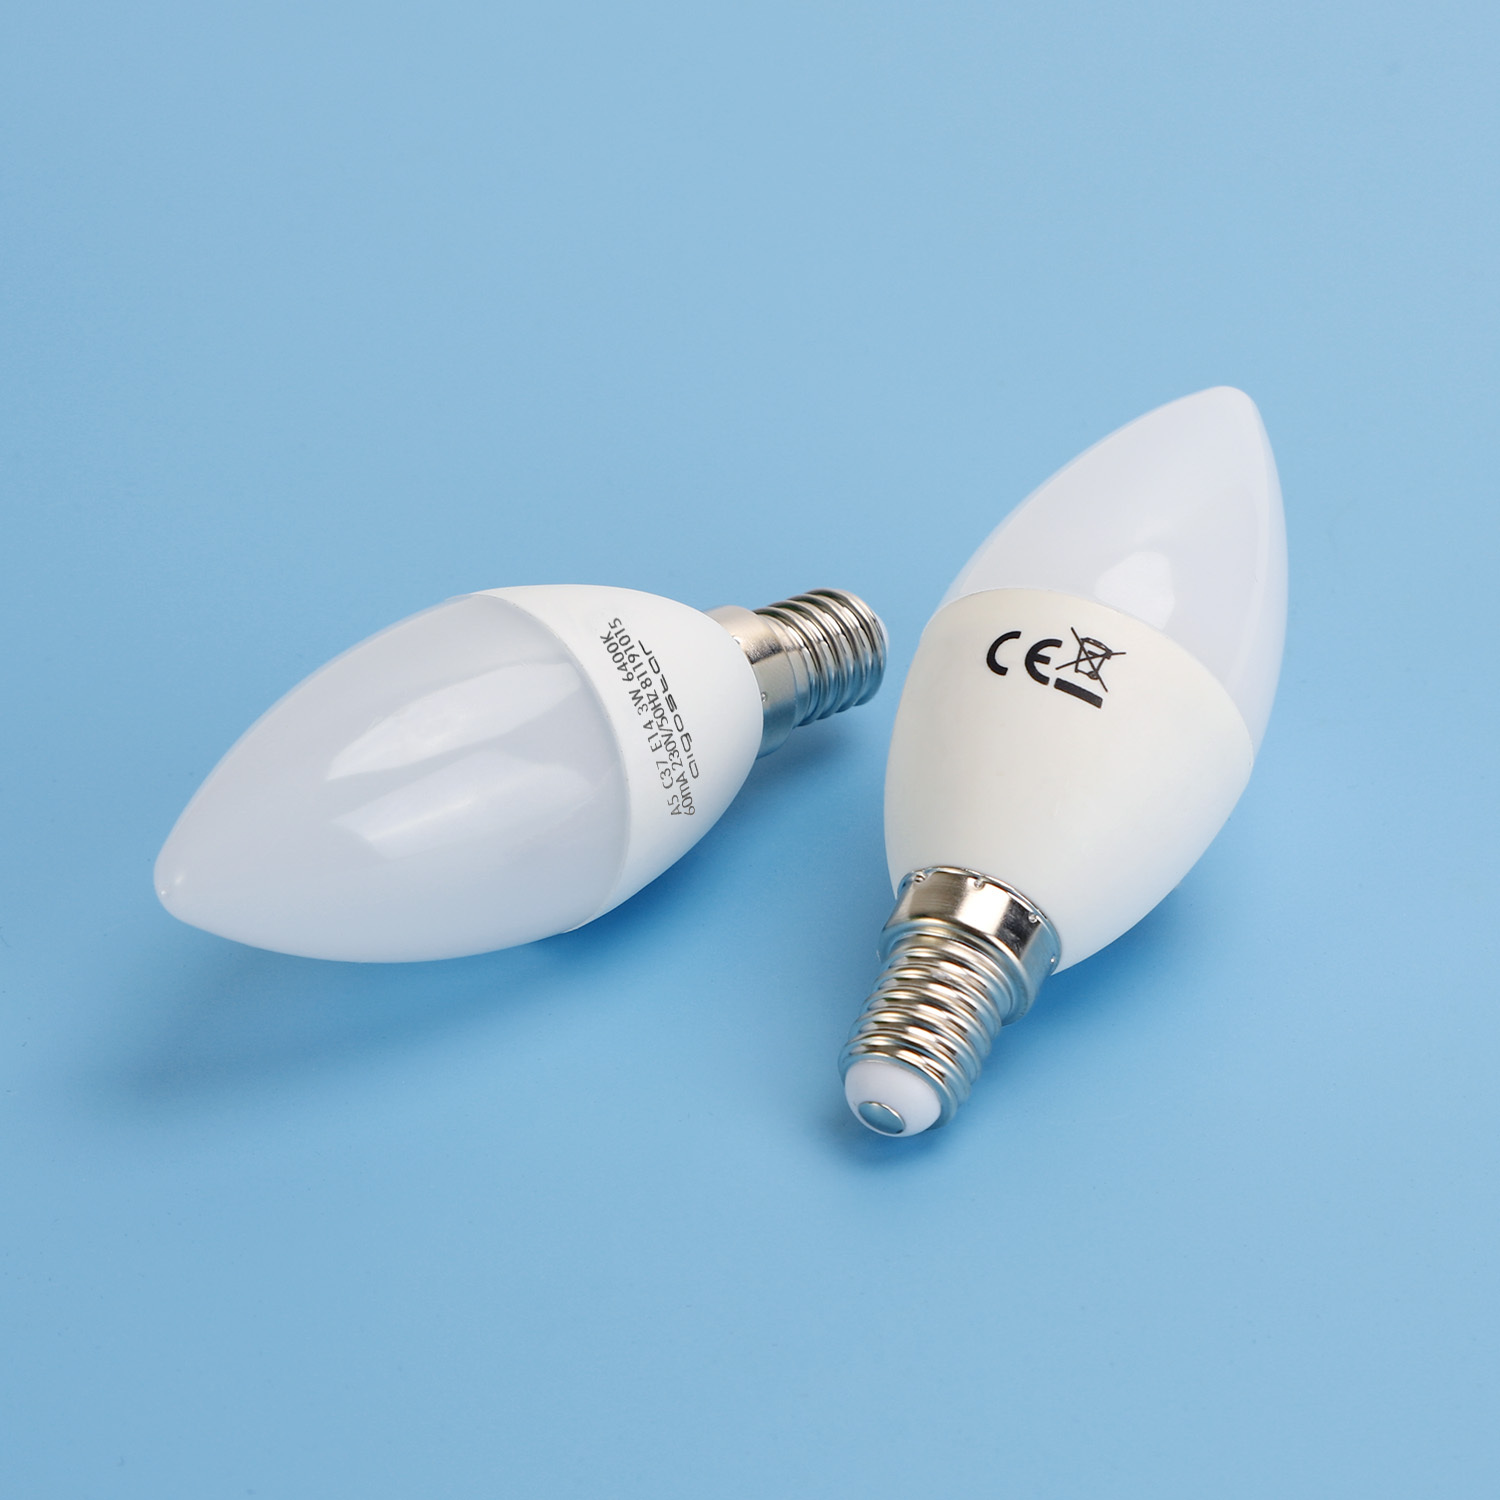 Aigostar - Confezione da 5 Lampadine LED A5 C37, 3W, E14, 225 lumen, Luce Bianca 6400K [Classe di efficienza energetica A+]